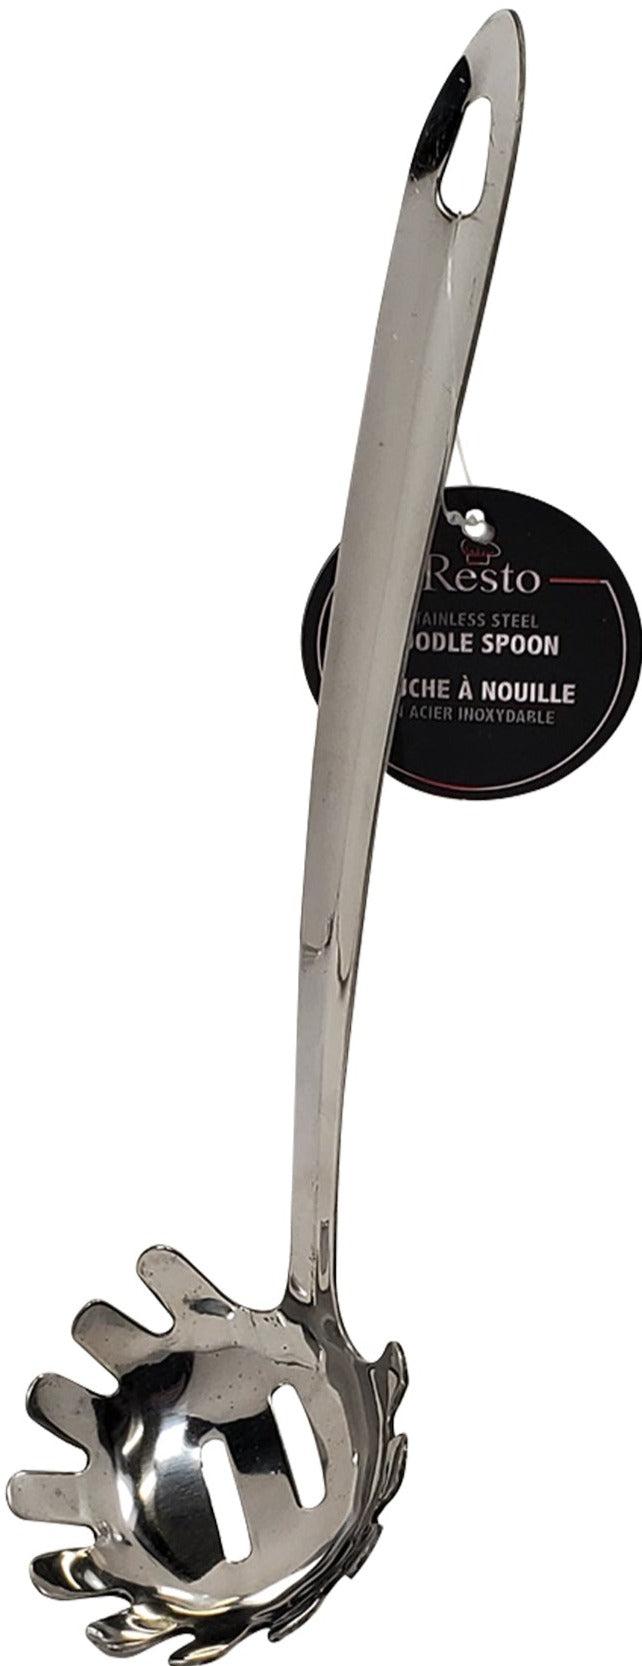 Resto - Noodle Serving Spoon - SS - MSSUN